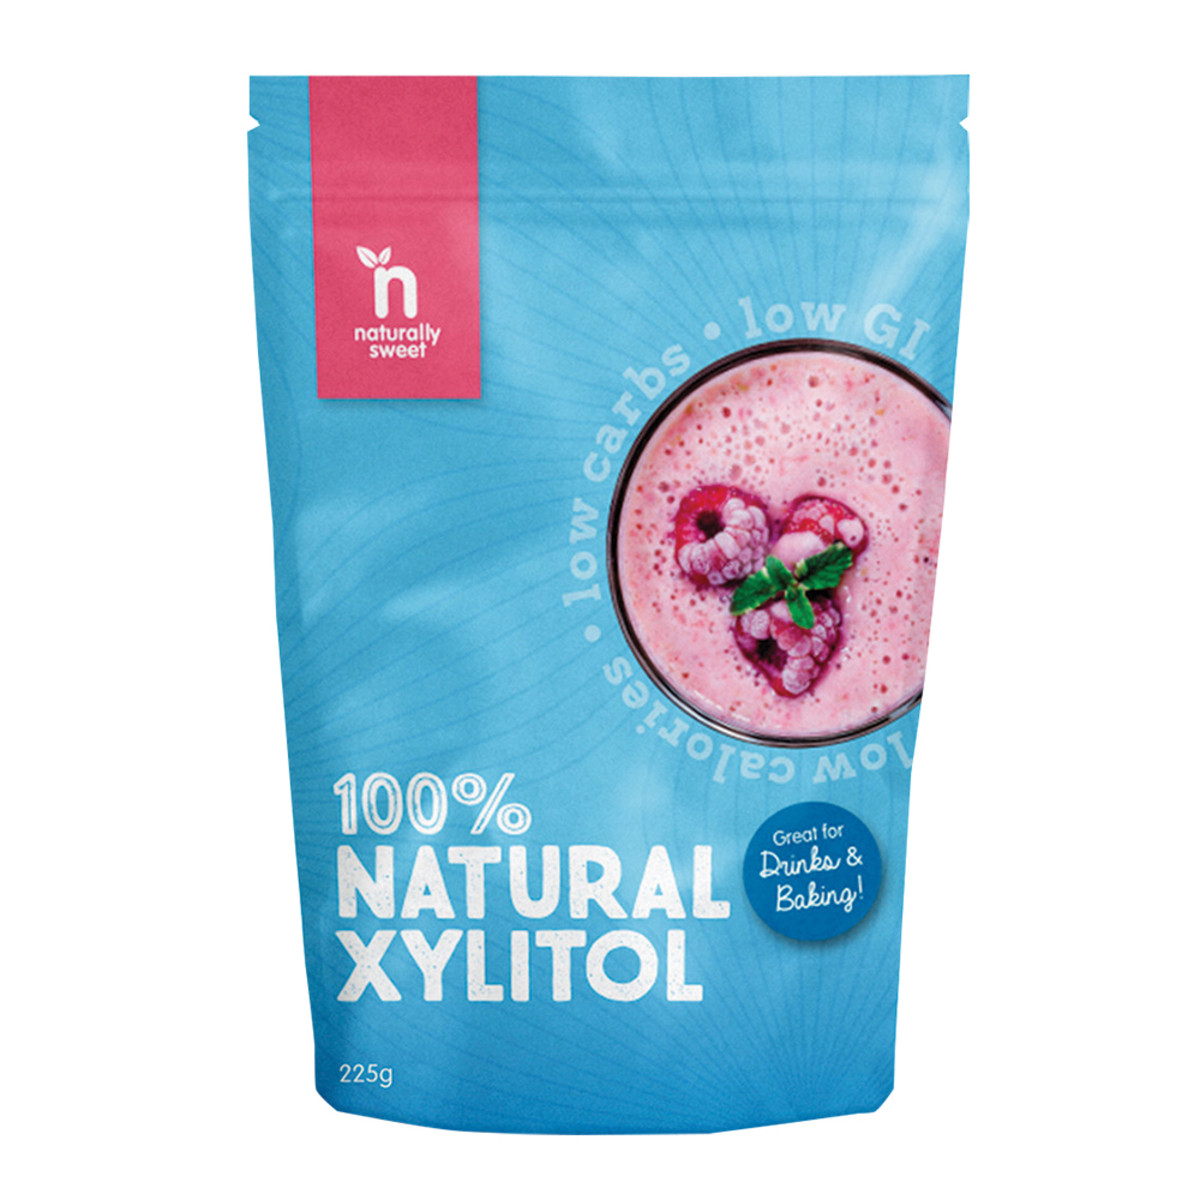 NATURALLY SWEET - Naturally Sweet 100% Natural Xylitol